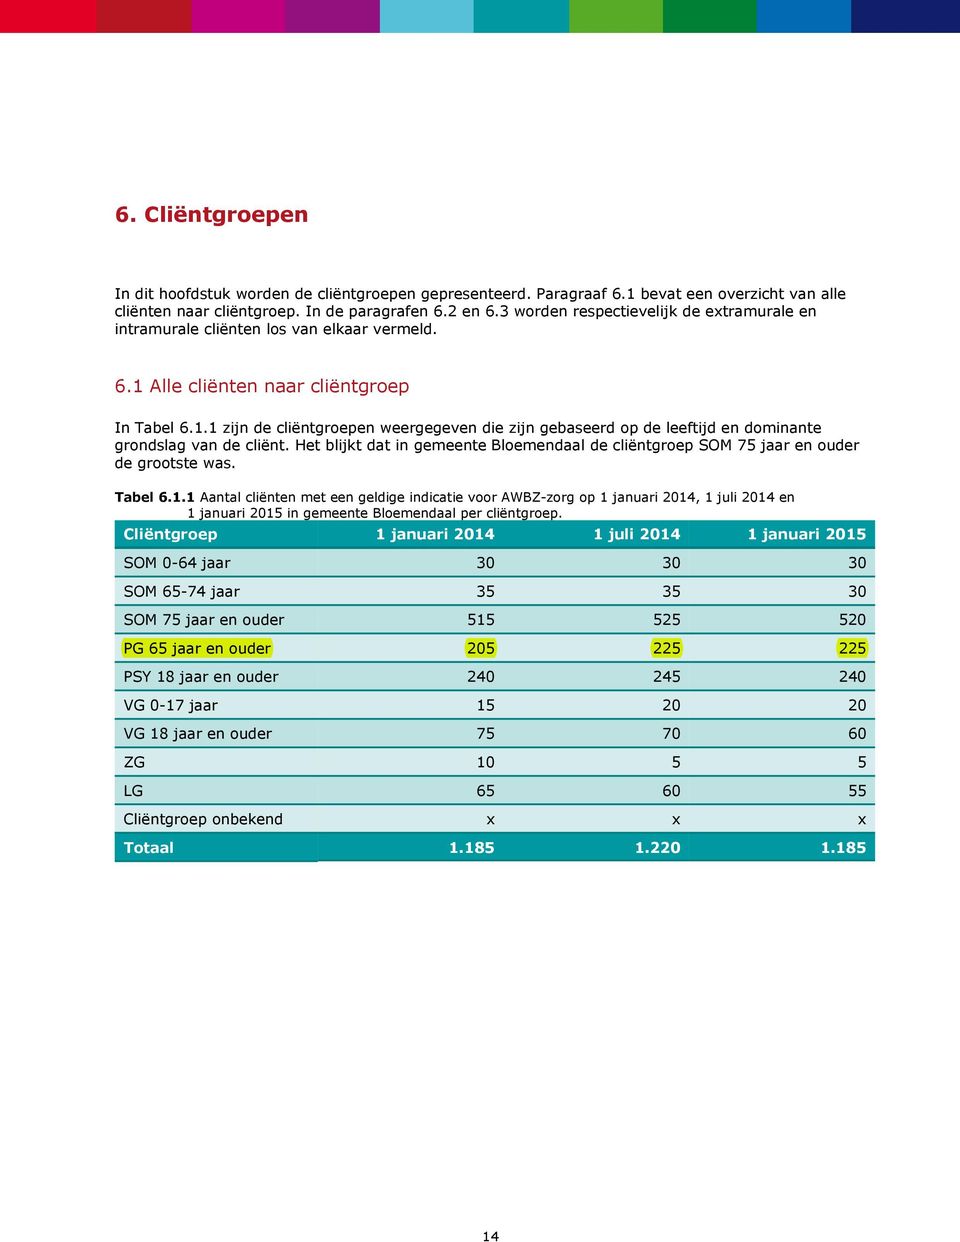 Het blijkt dat in gemeente Bloemendaal de cliëntgroep SOM 75 jaar en de grootste was. Tabel 6.1.